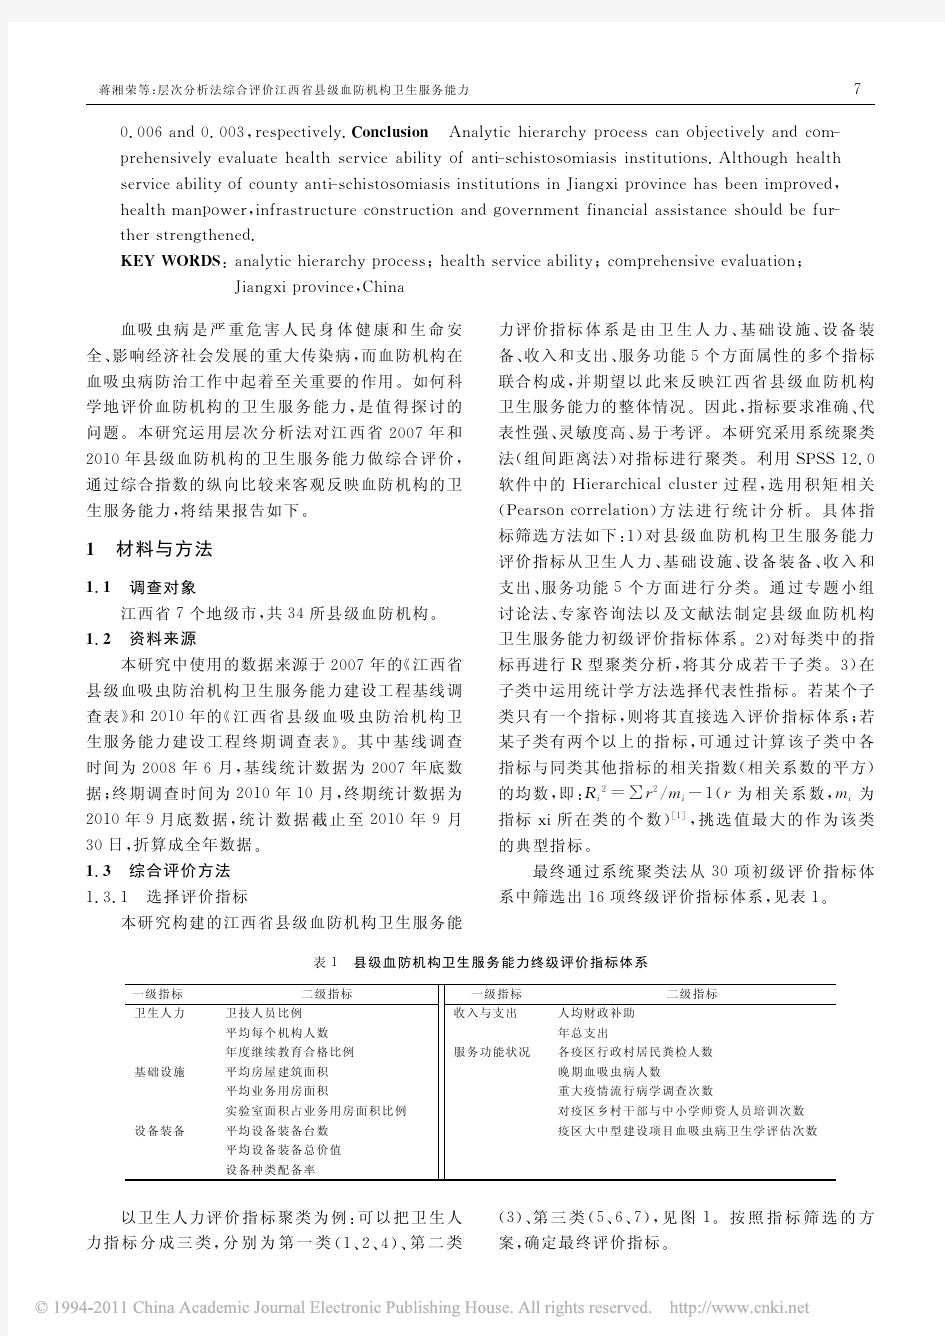 层次分析法综合评价江西省县级血防机构卫生服务能力